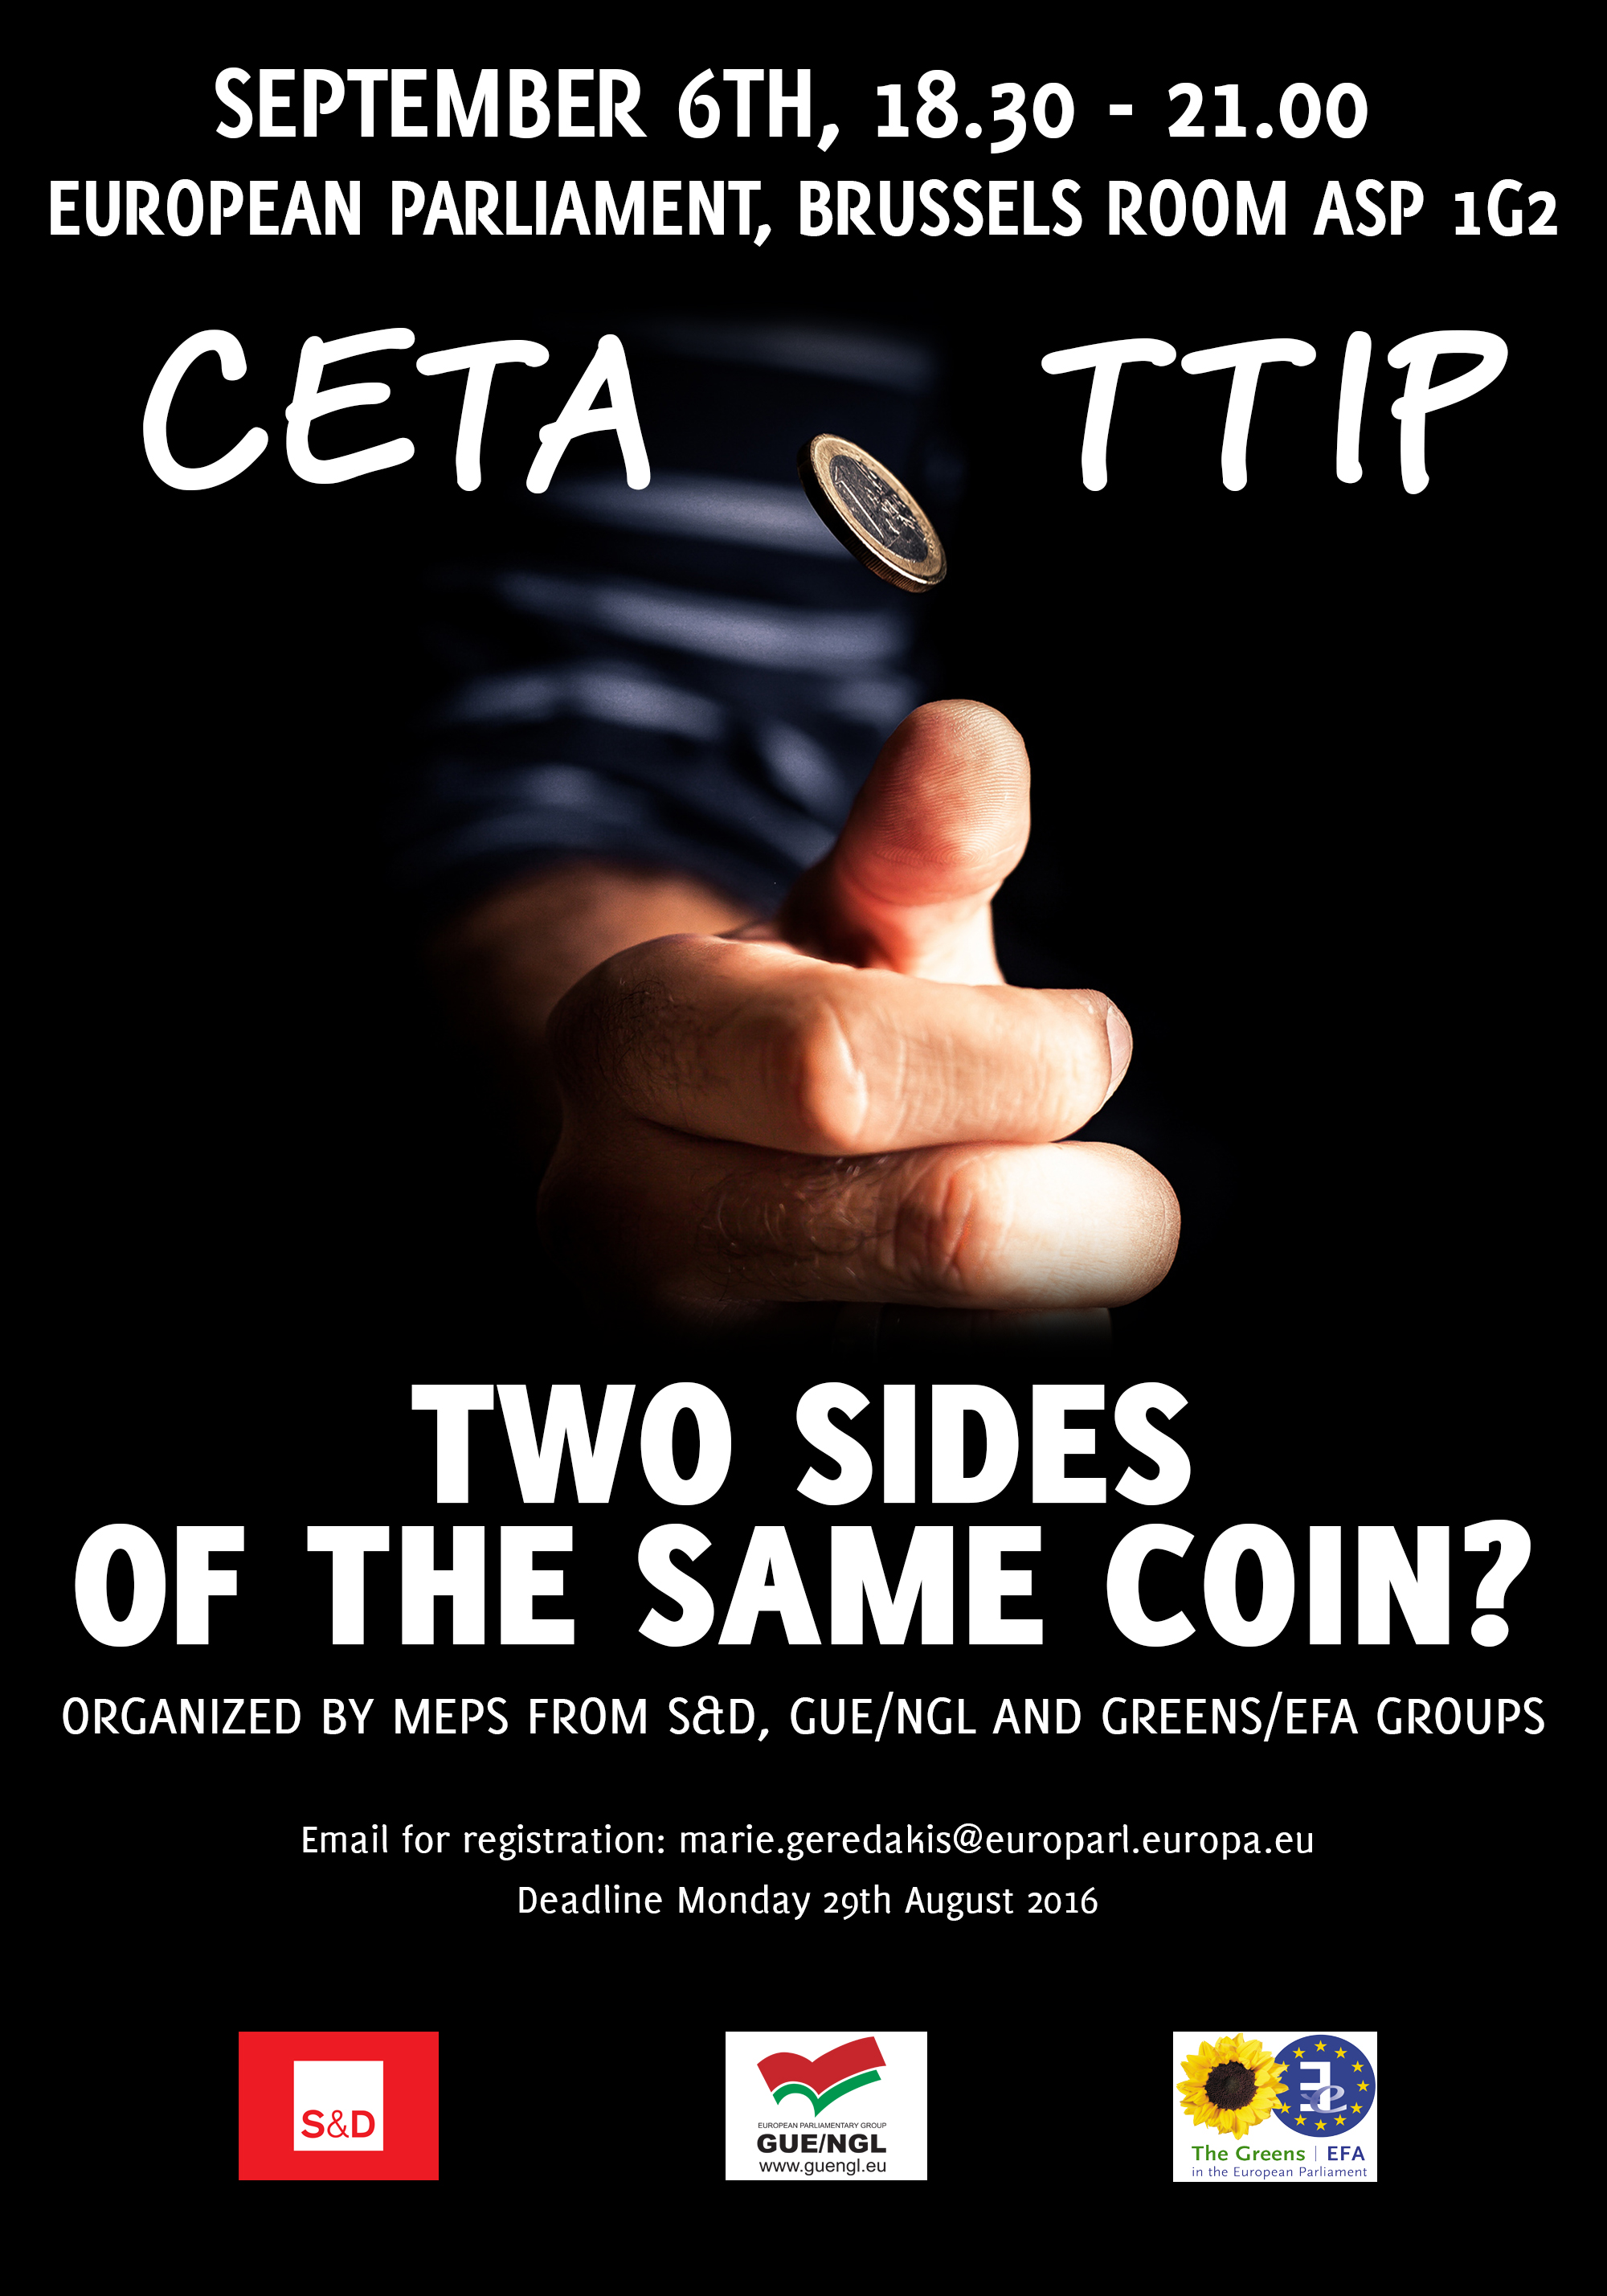 Προοδευτικοί ευρωβουλευτές από τρεις πολιτικές ομάδες ενώνονται για να διερευνήσουν την εμπορική συμφωνία CETA